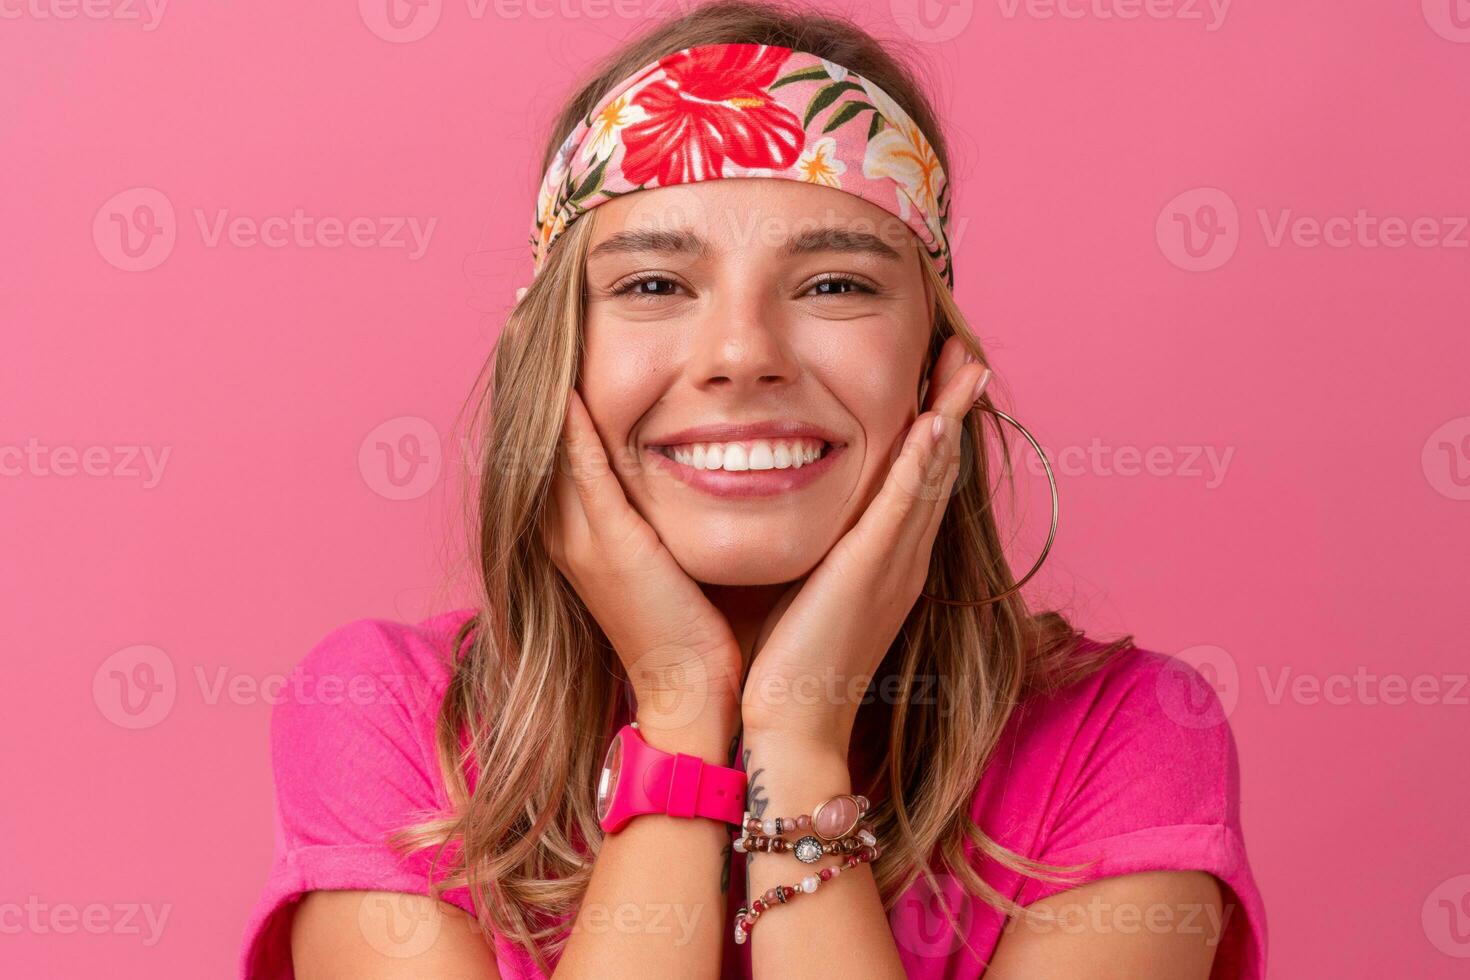 bonito linda sonriente mujer en rosado camisa boho hippie estilo accesorios sonriente foto